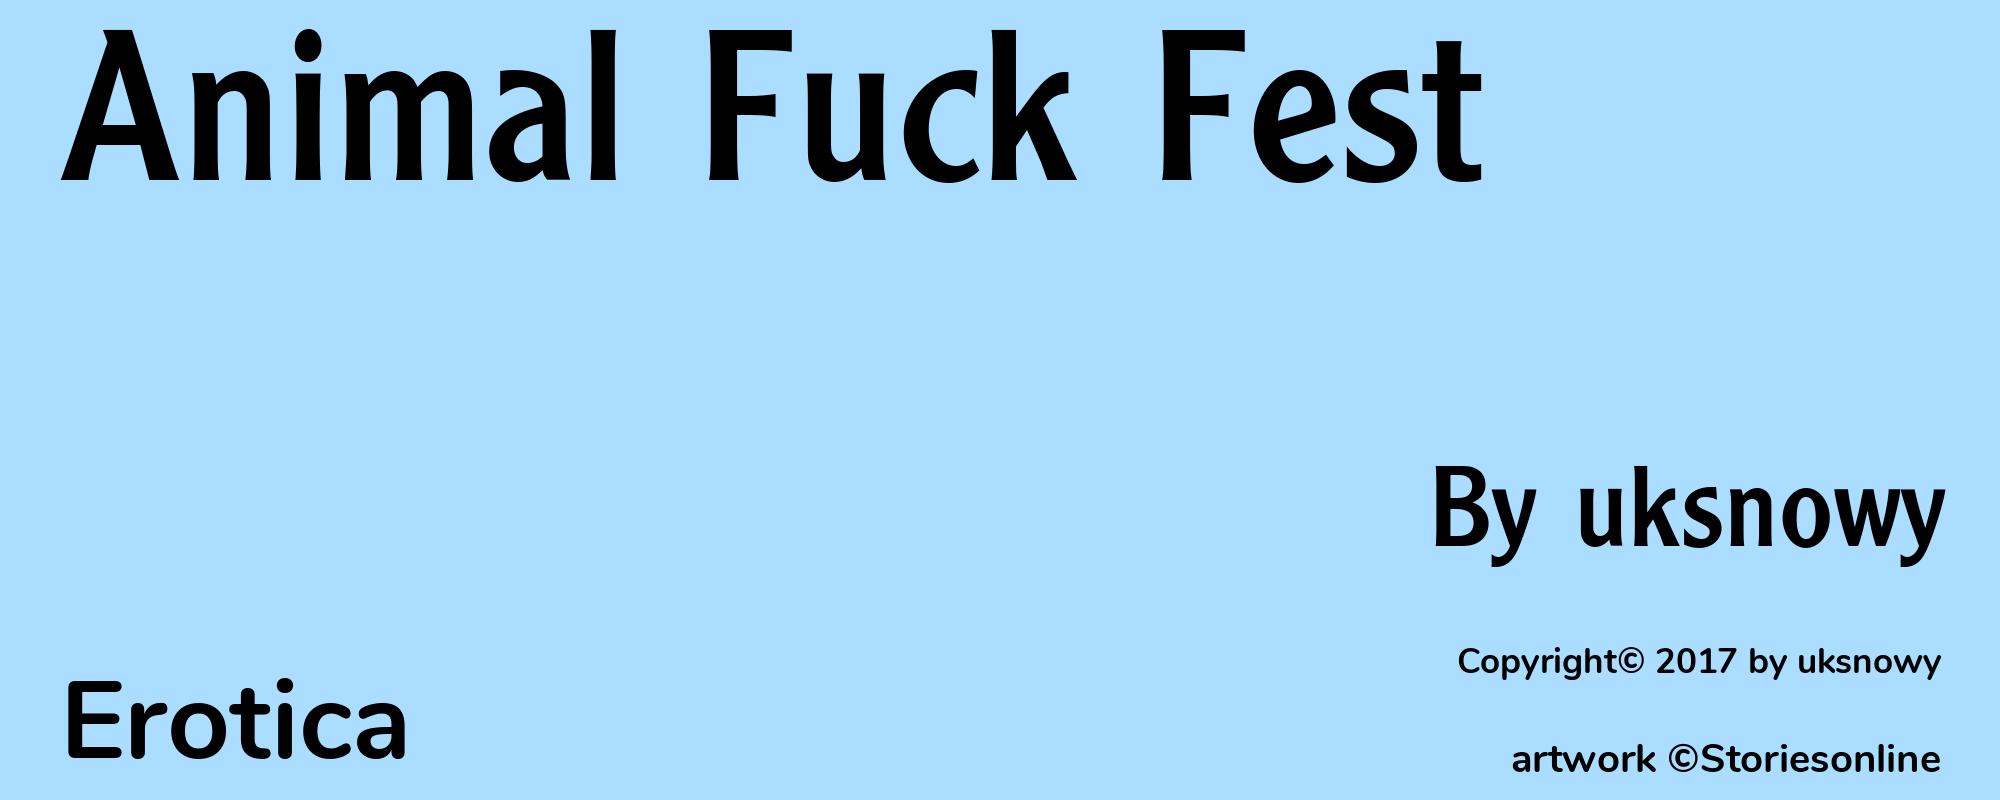 Animal Fuck Fest - Cover